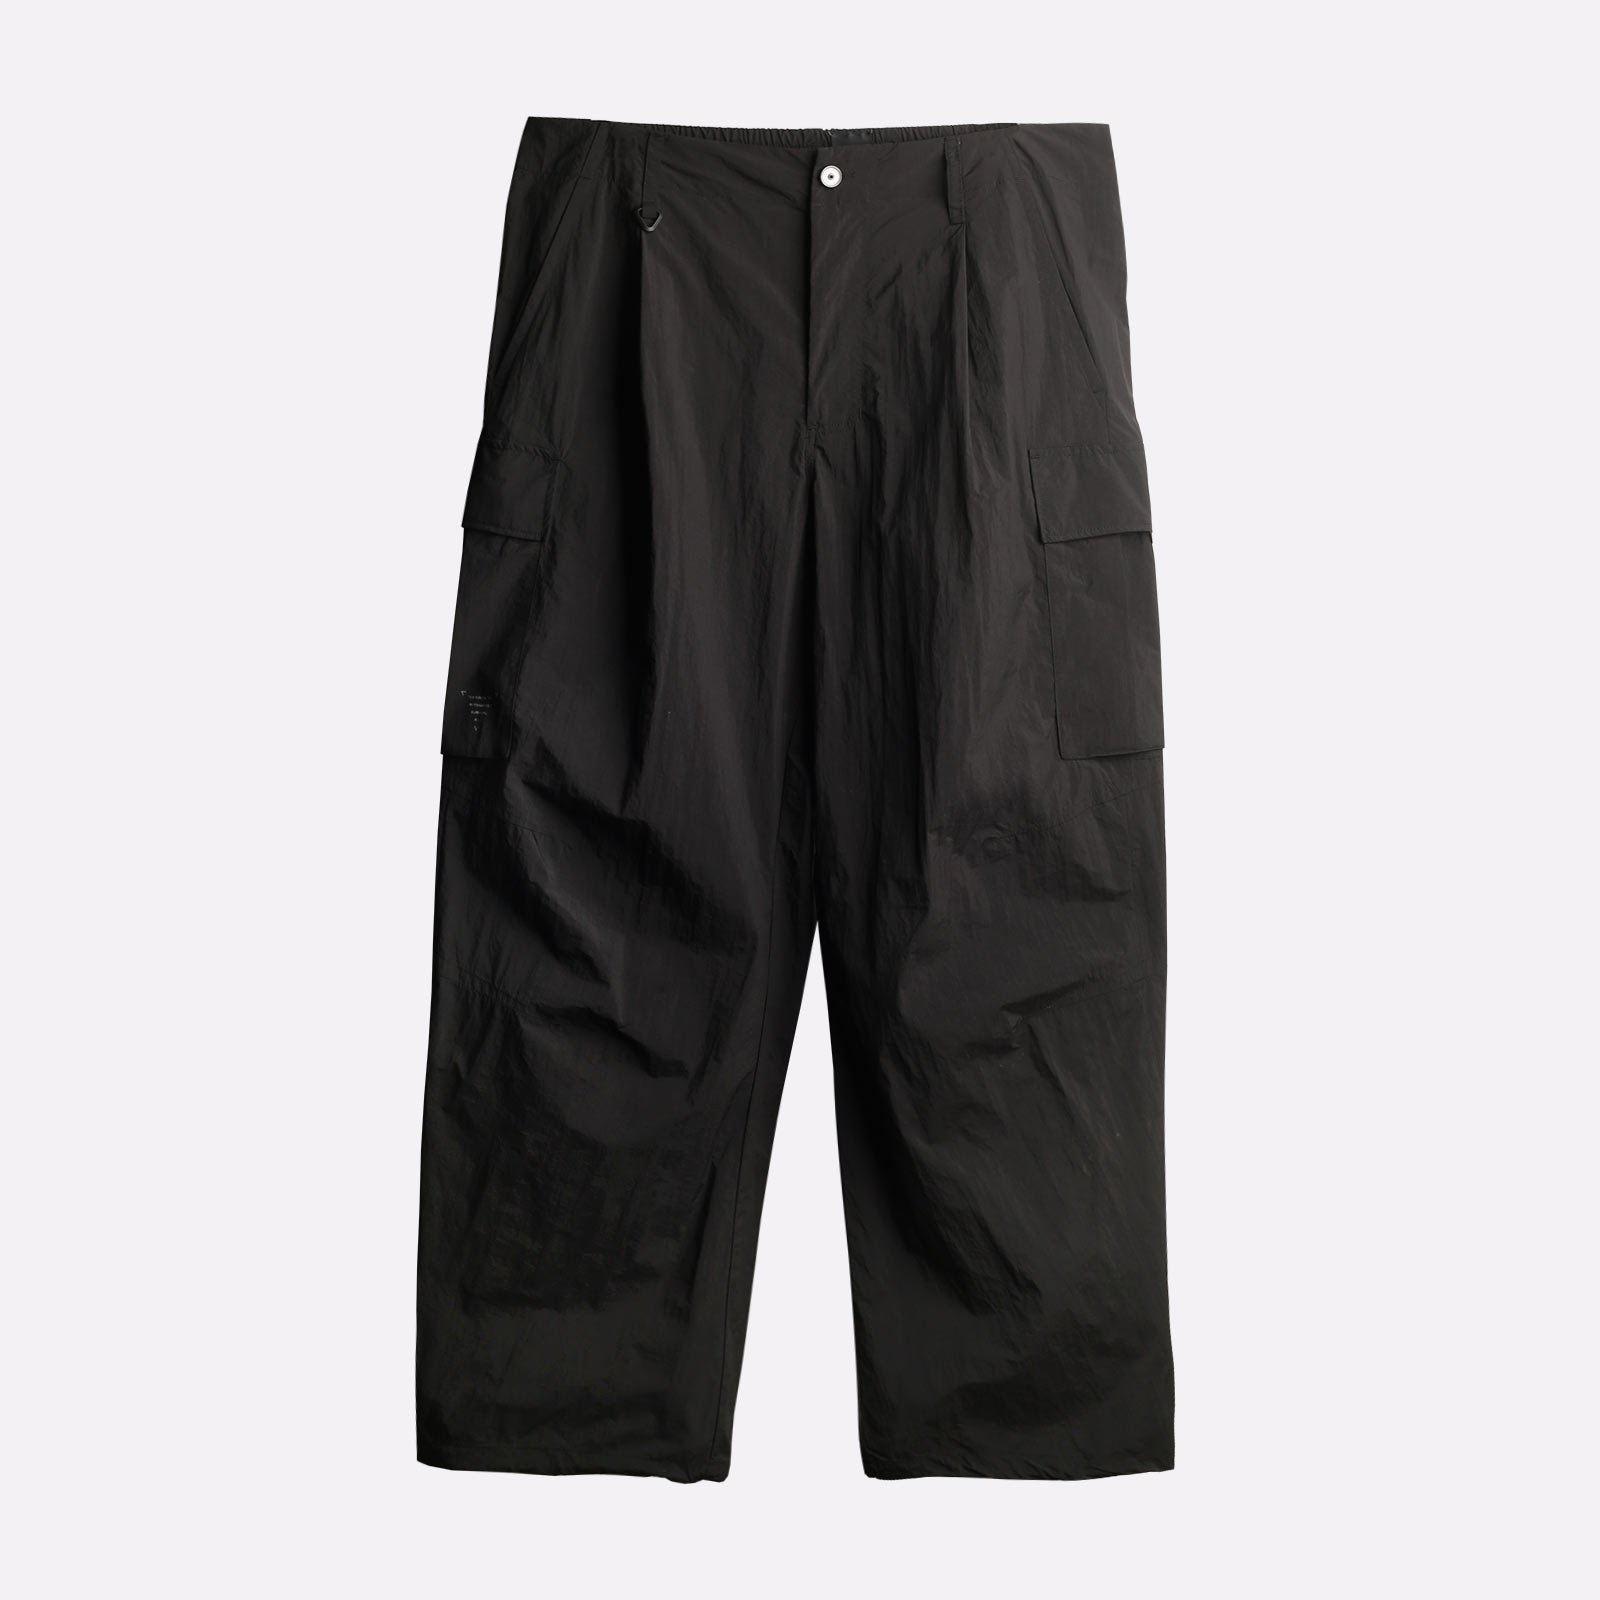 мужские брюки KRAKATAU Rm176-1  (Rm176-1-чёрн)  - цена, описание, фото 1